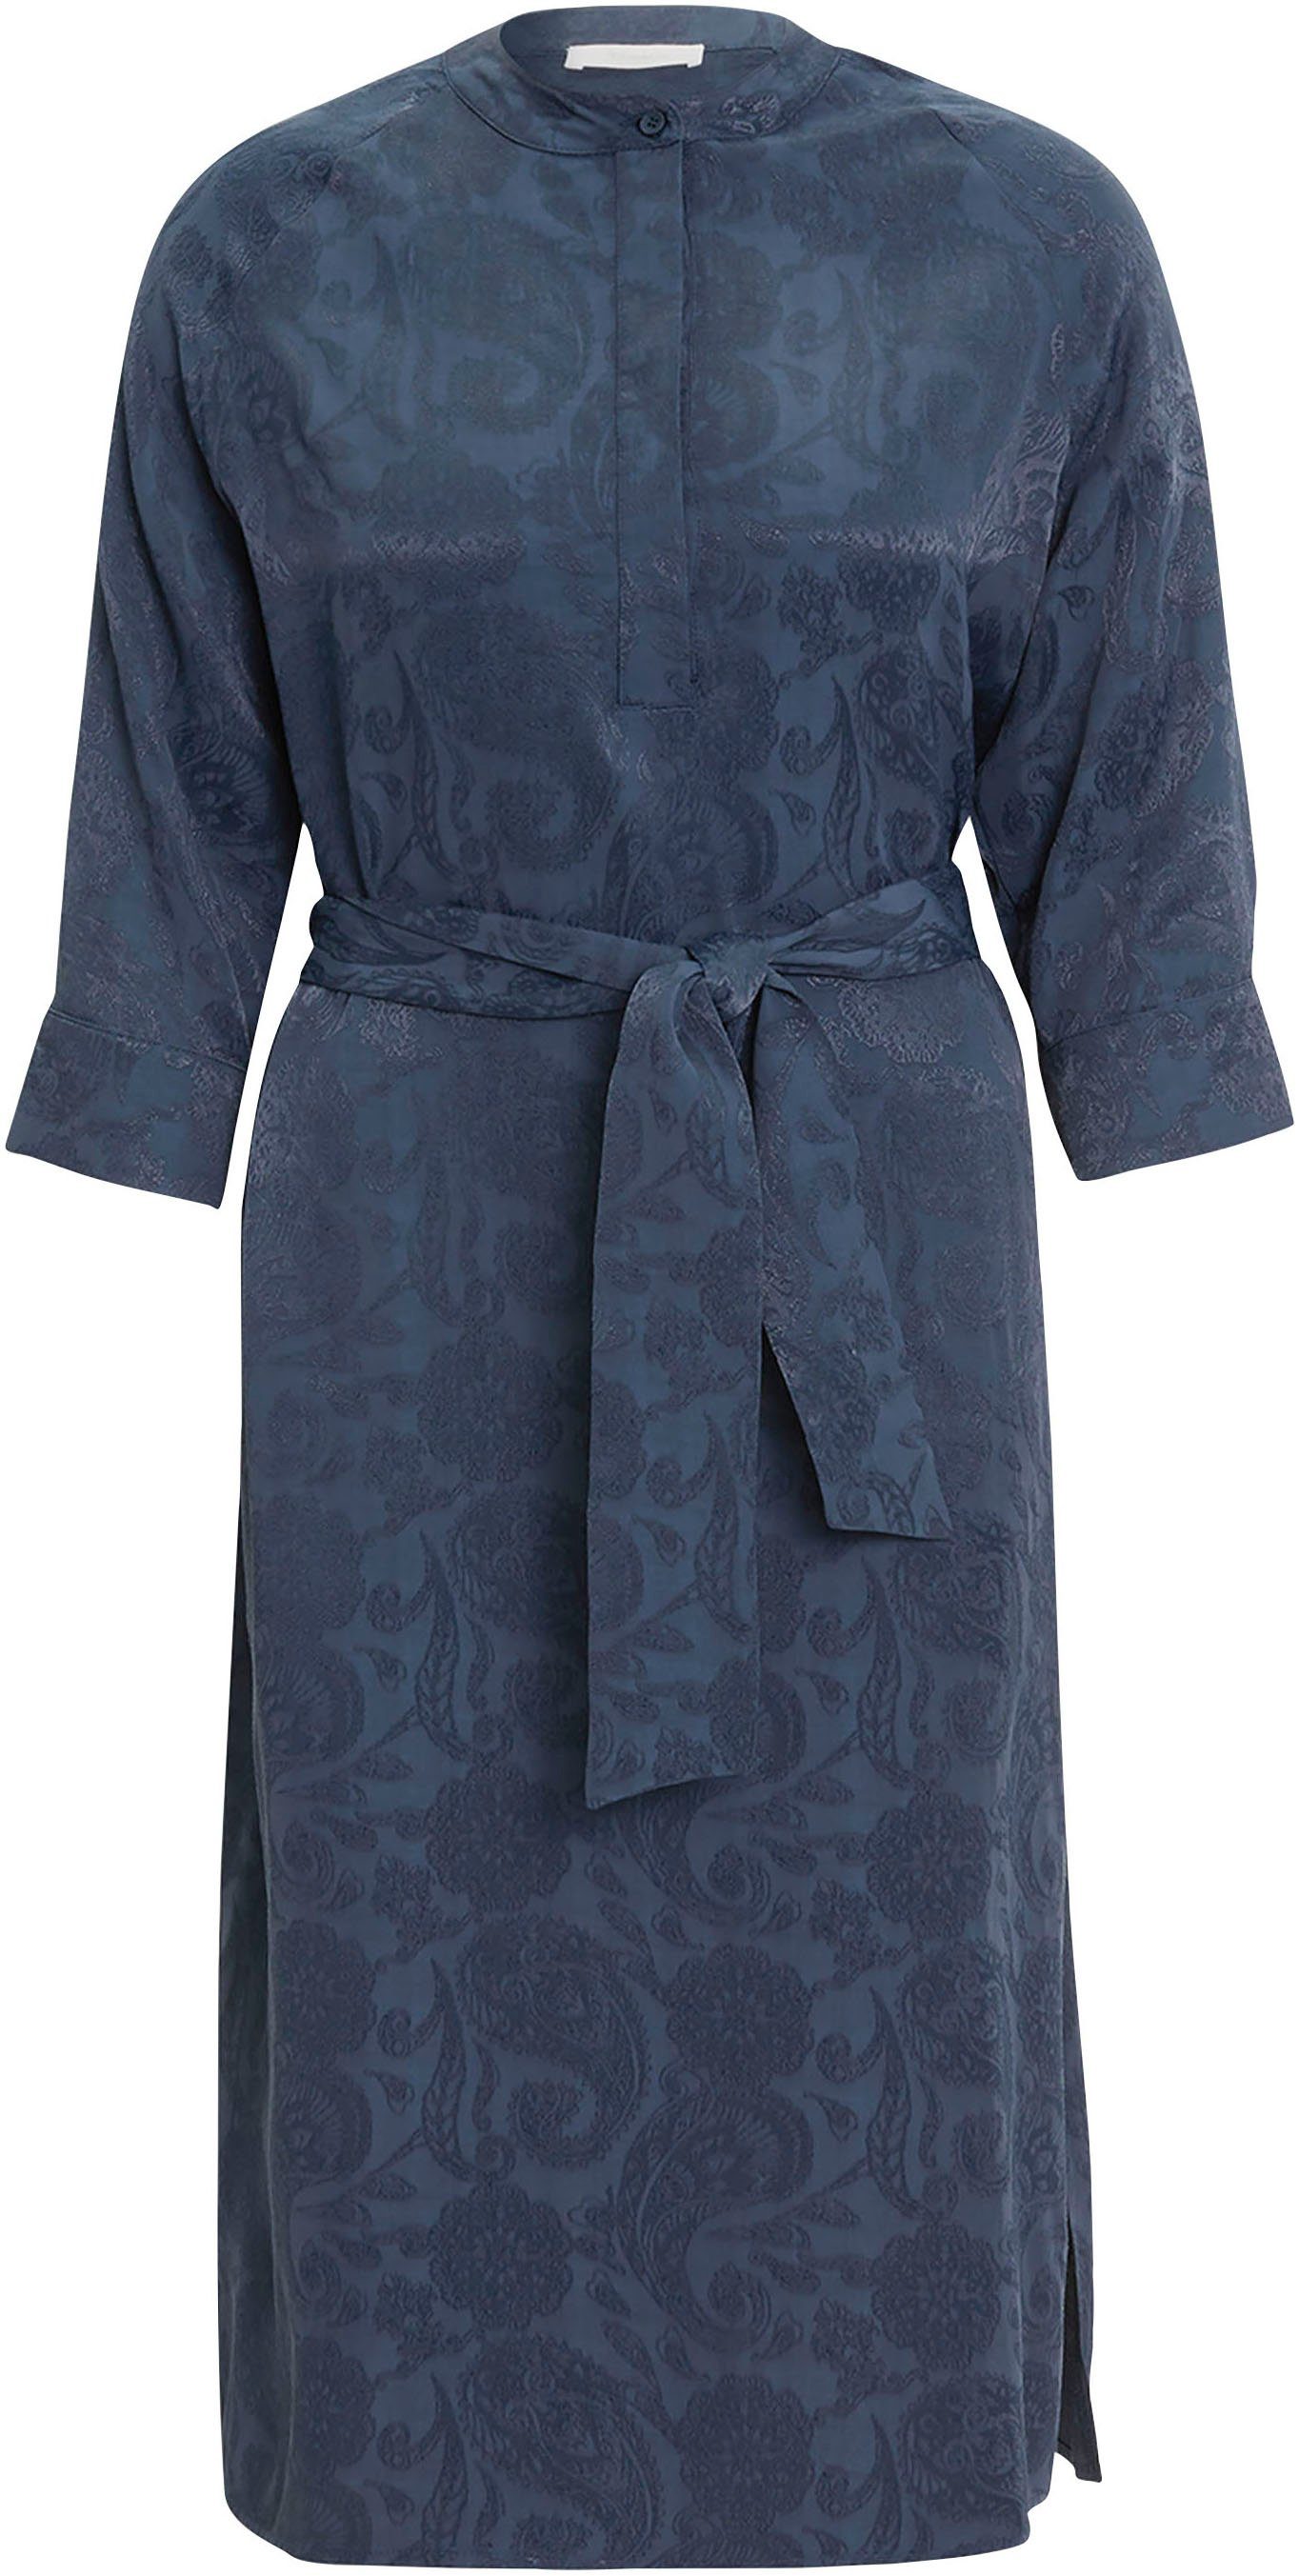 Tamaris Hemdblusenkleid mit glänzenden NEUE Paisley-Muster - KOLLEKTION